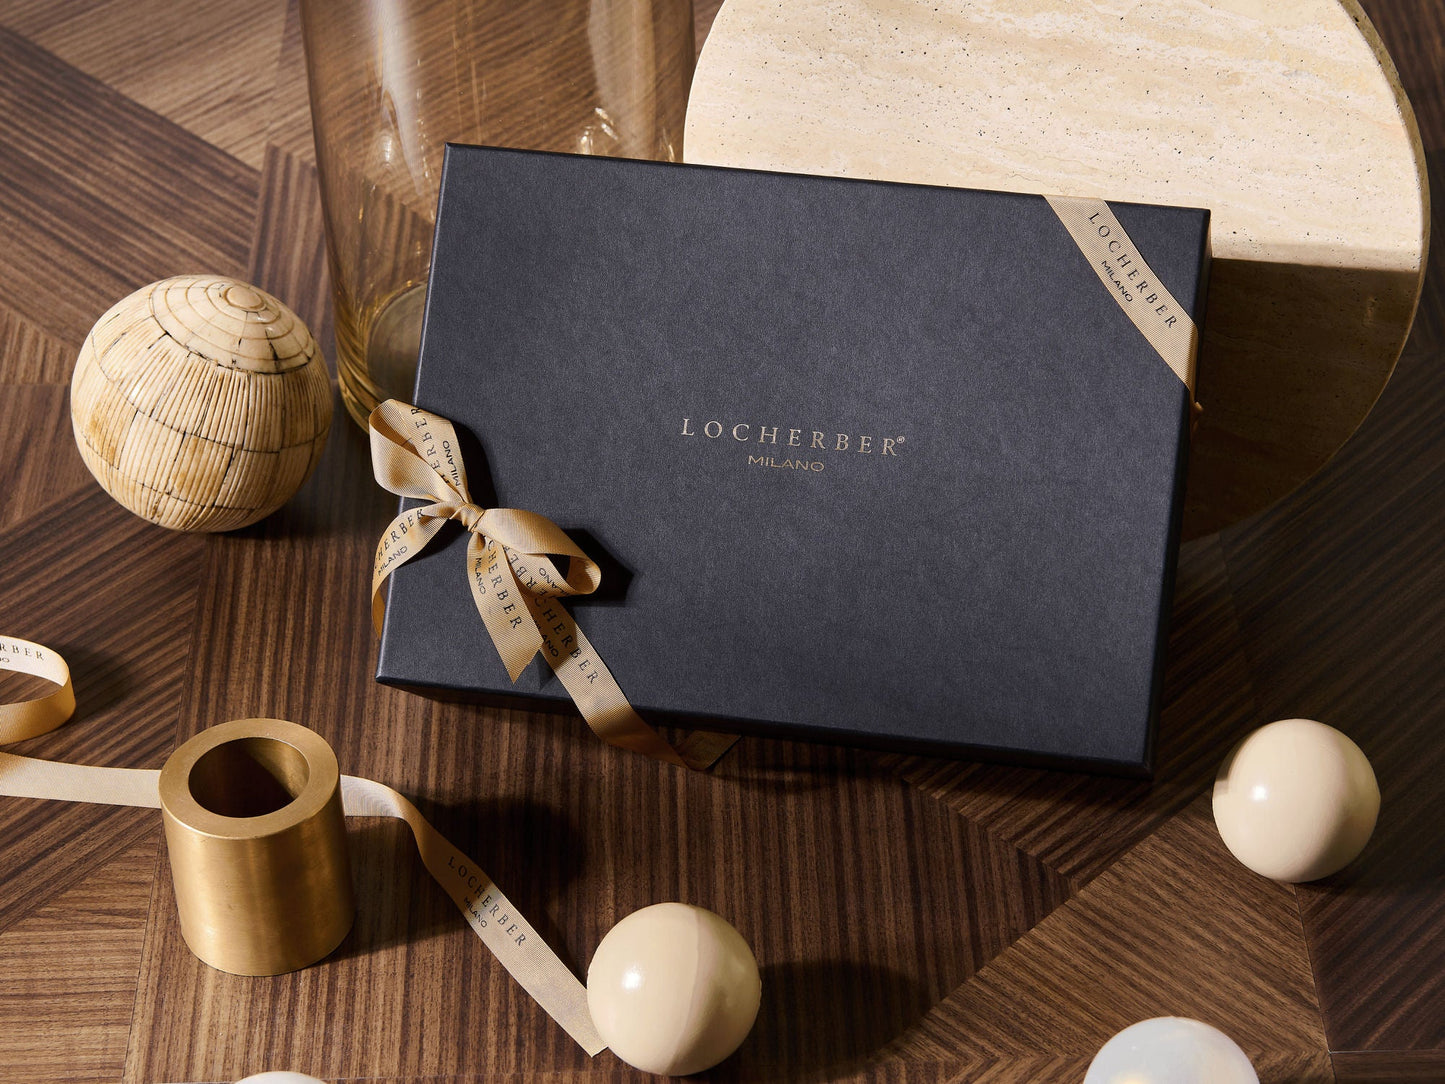 DOLCE ROMA XXI Diffuser Gift box by Locherber Milano 500ml - |VESIMI Design|